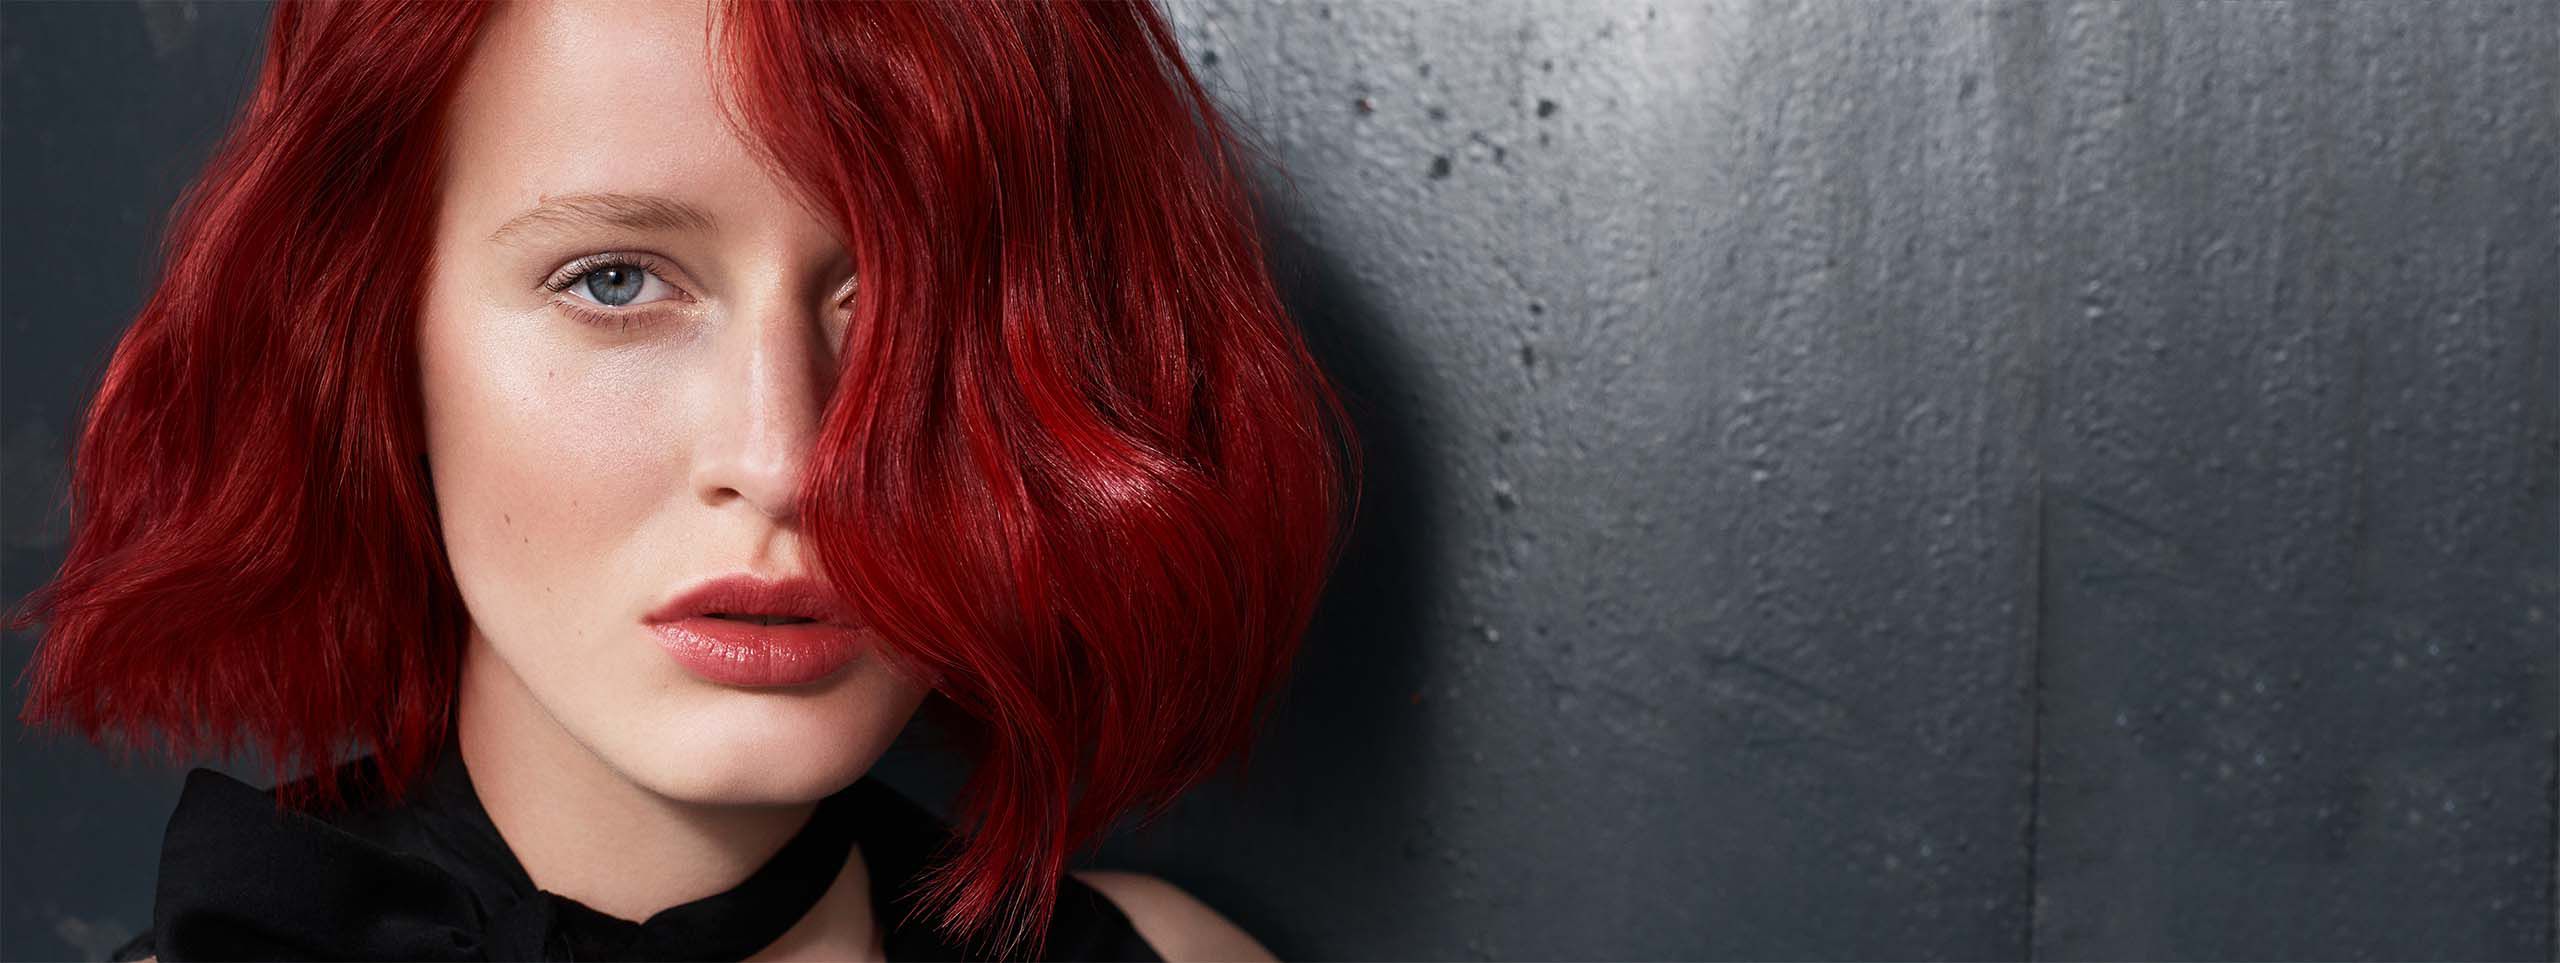 Frau mit schönen schulterlangen roten Haaren.